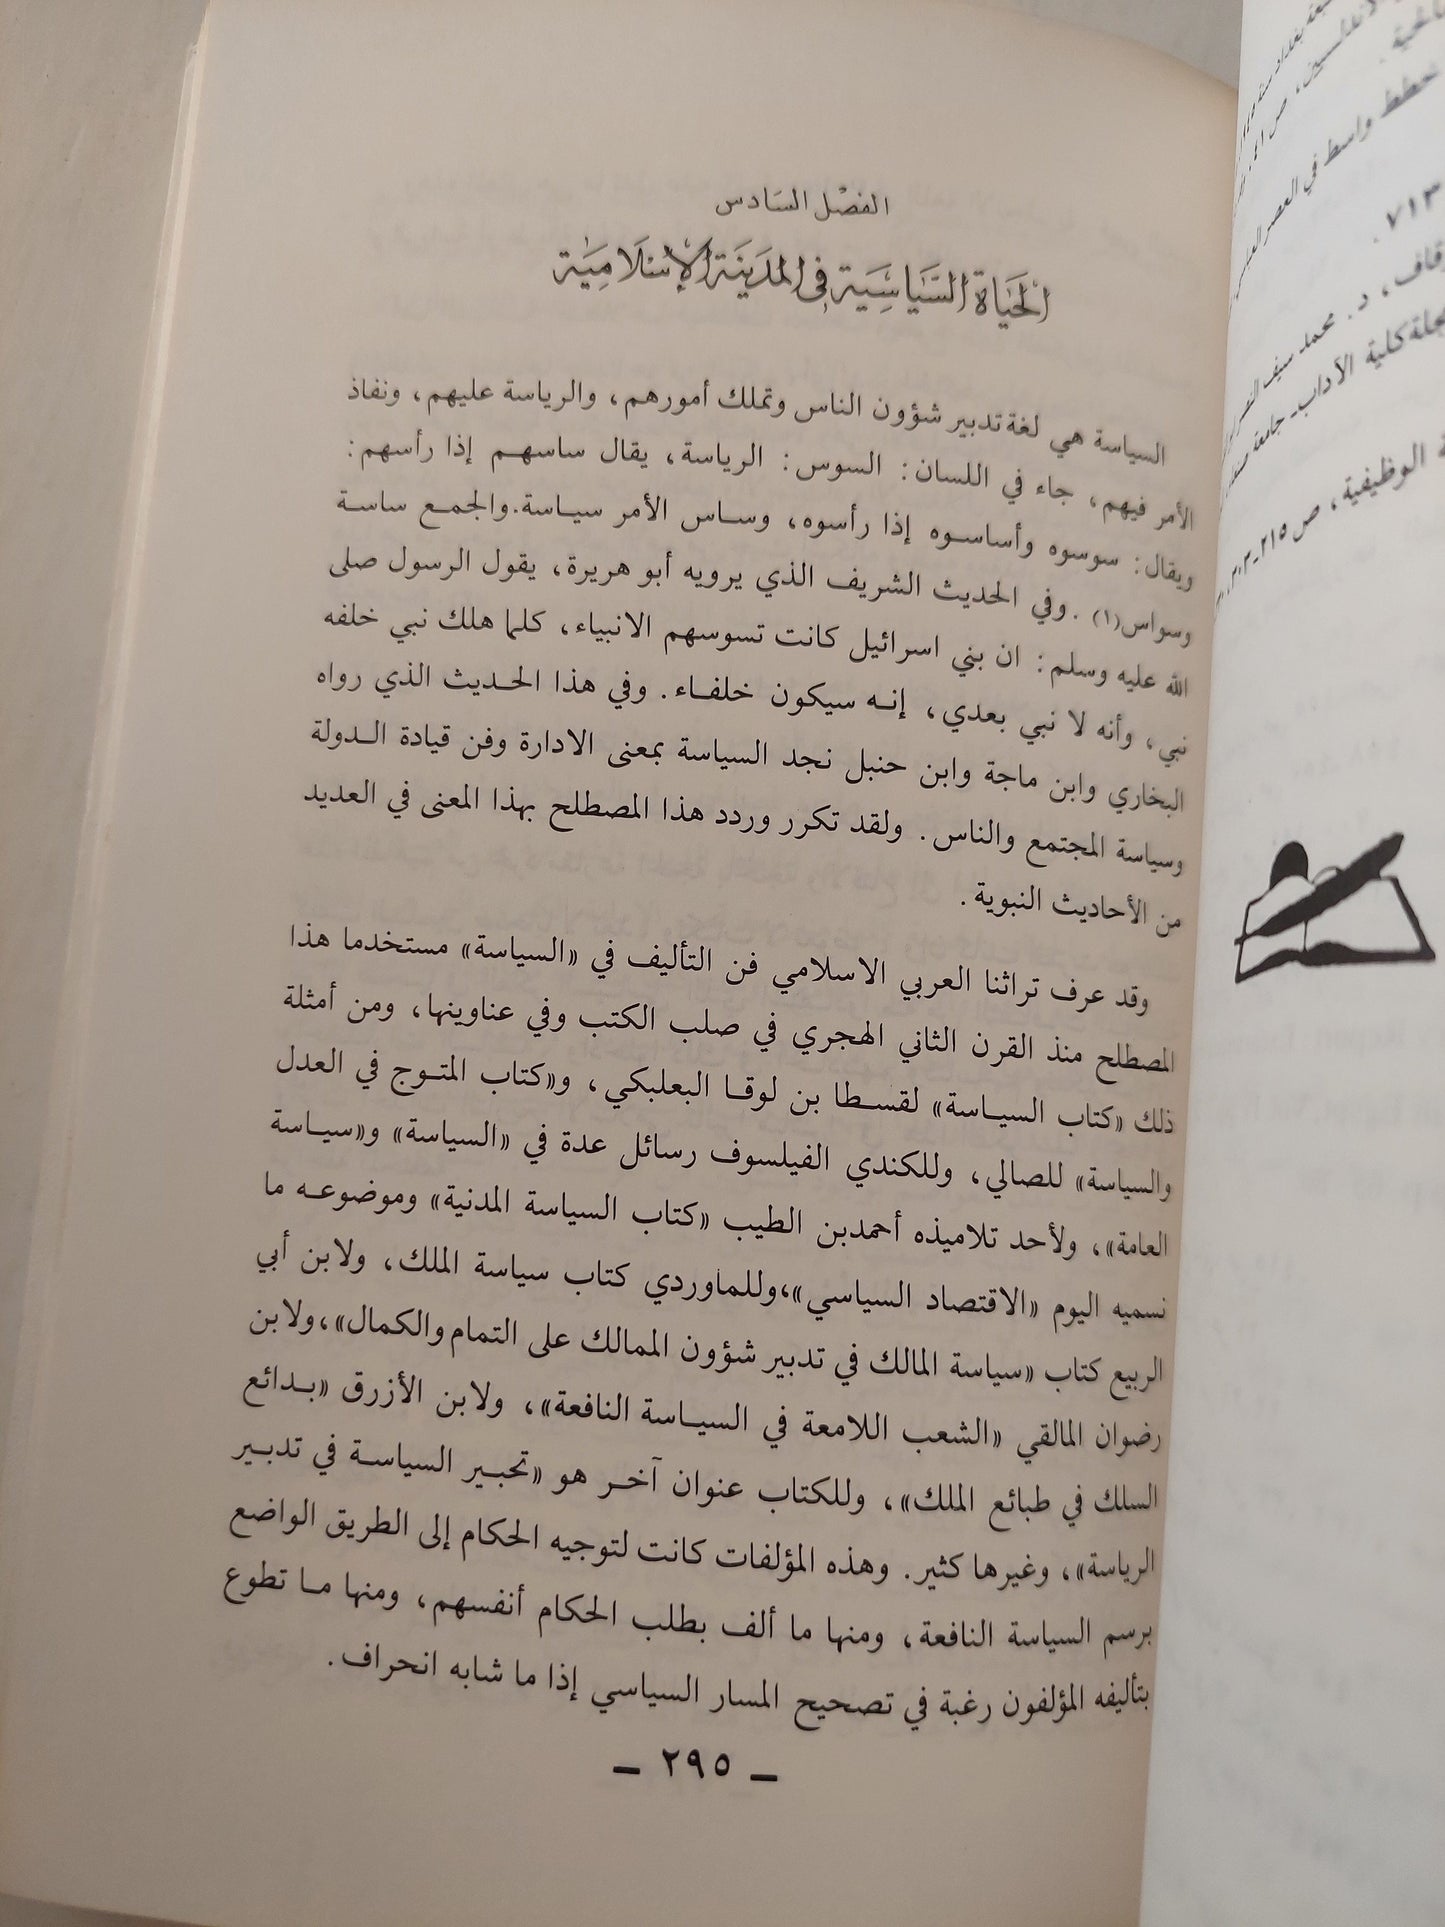 المدينة الإسلامية / د. محمد عبد الستار عثمان كتاب المكتبة الفلسفية 